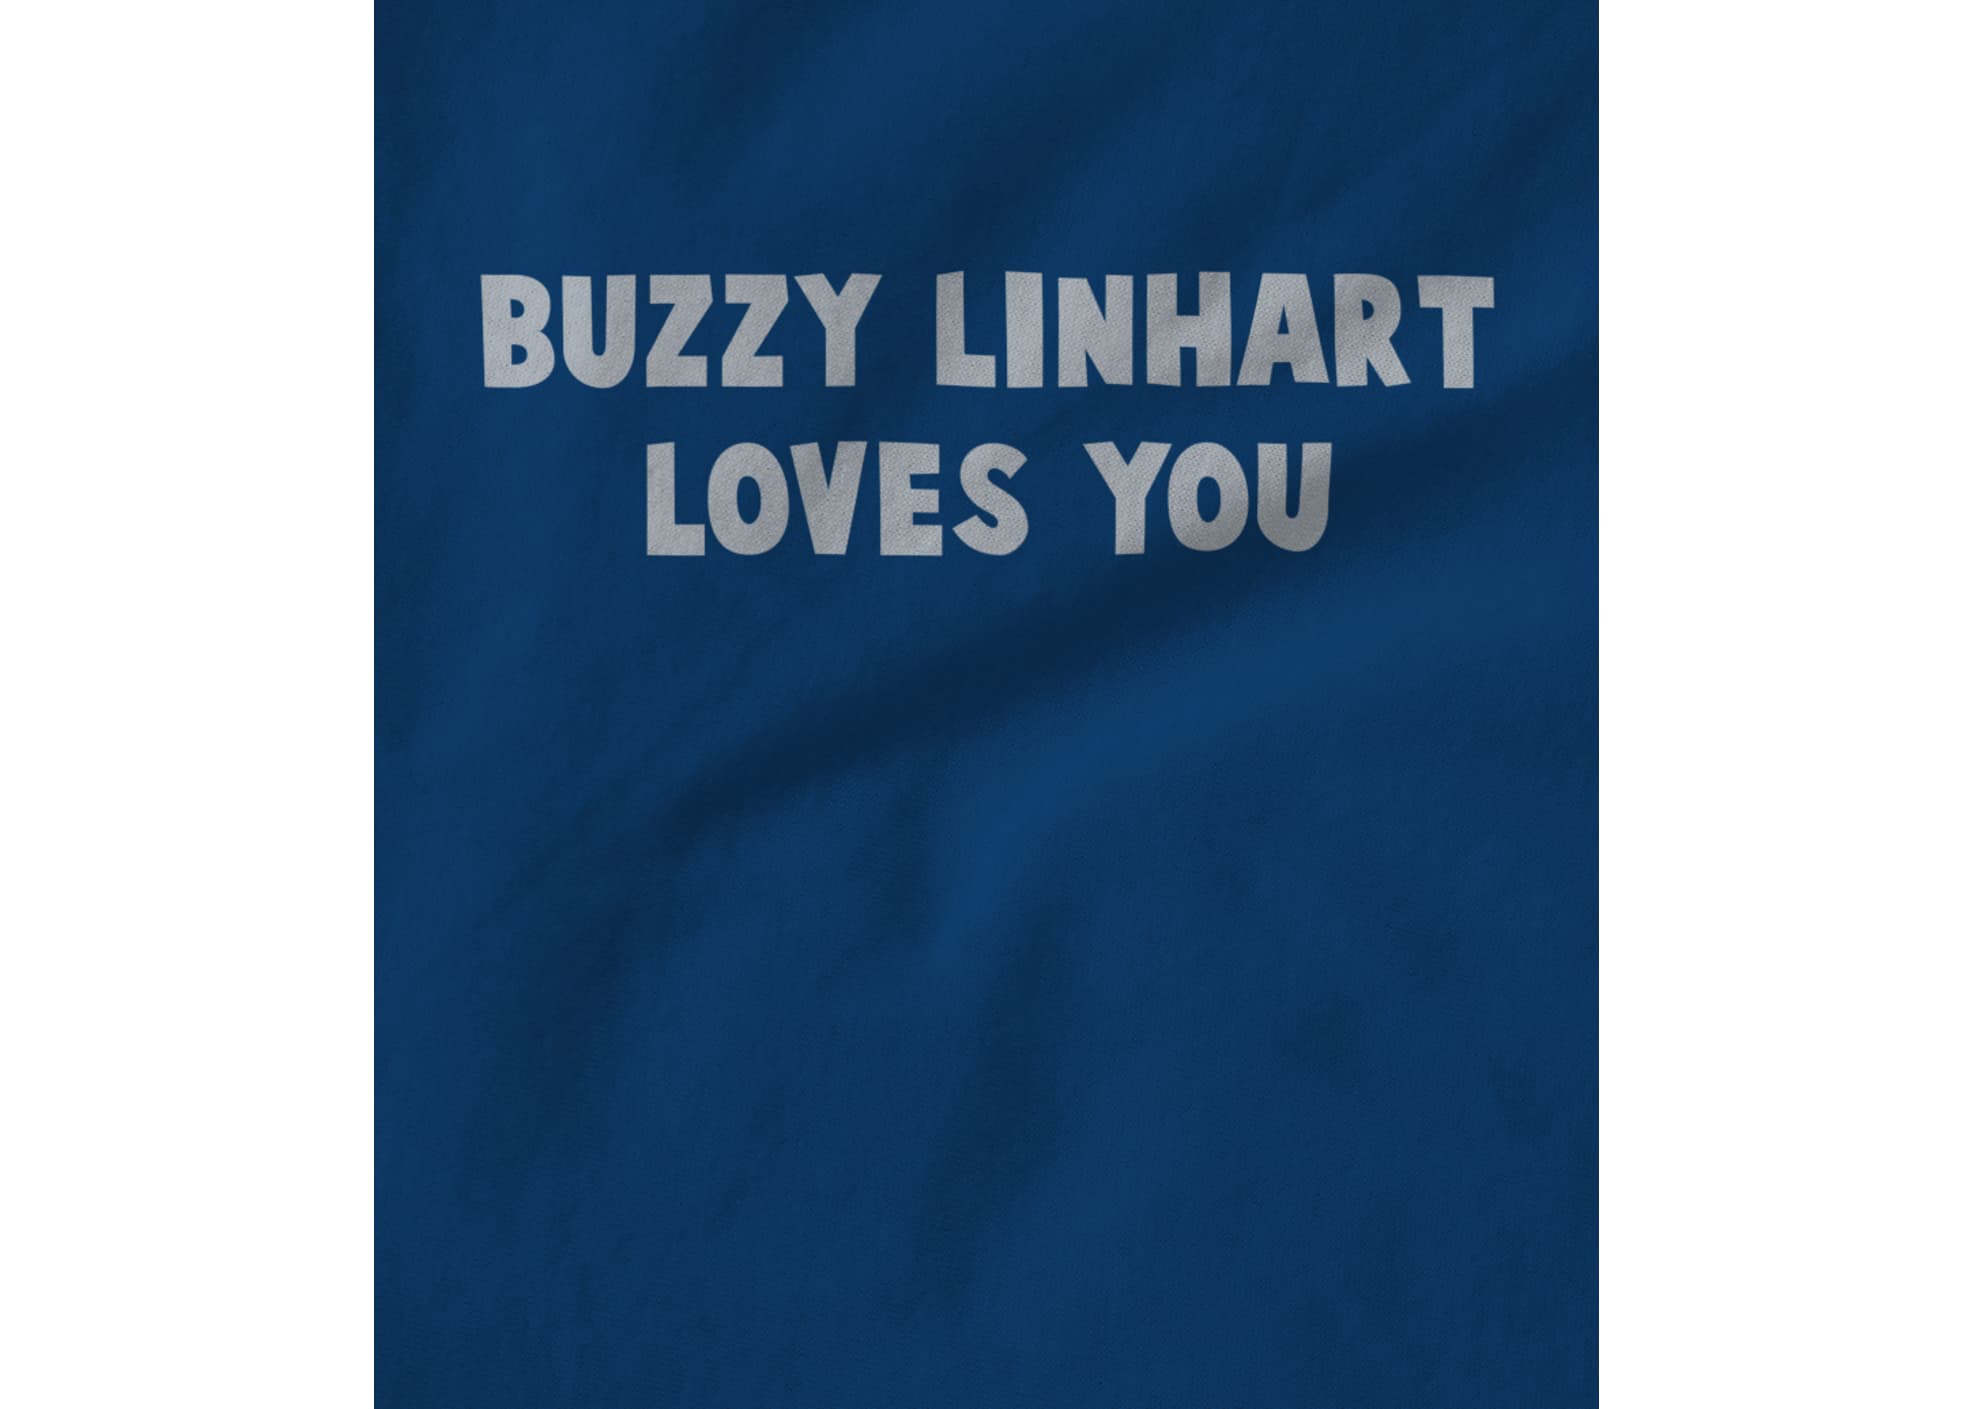 Buzzy linhart love buzz 1513900594